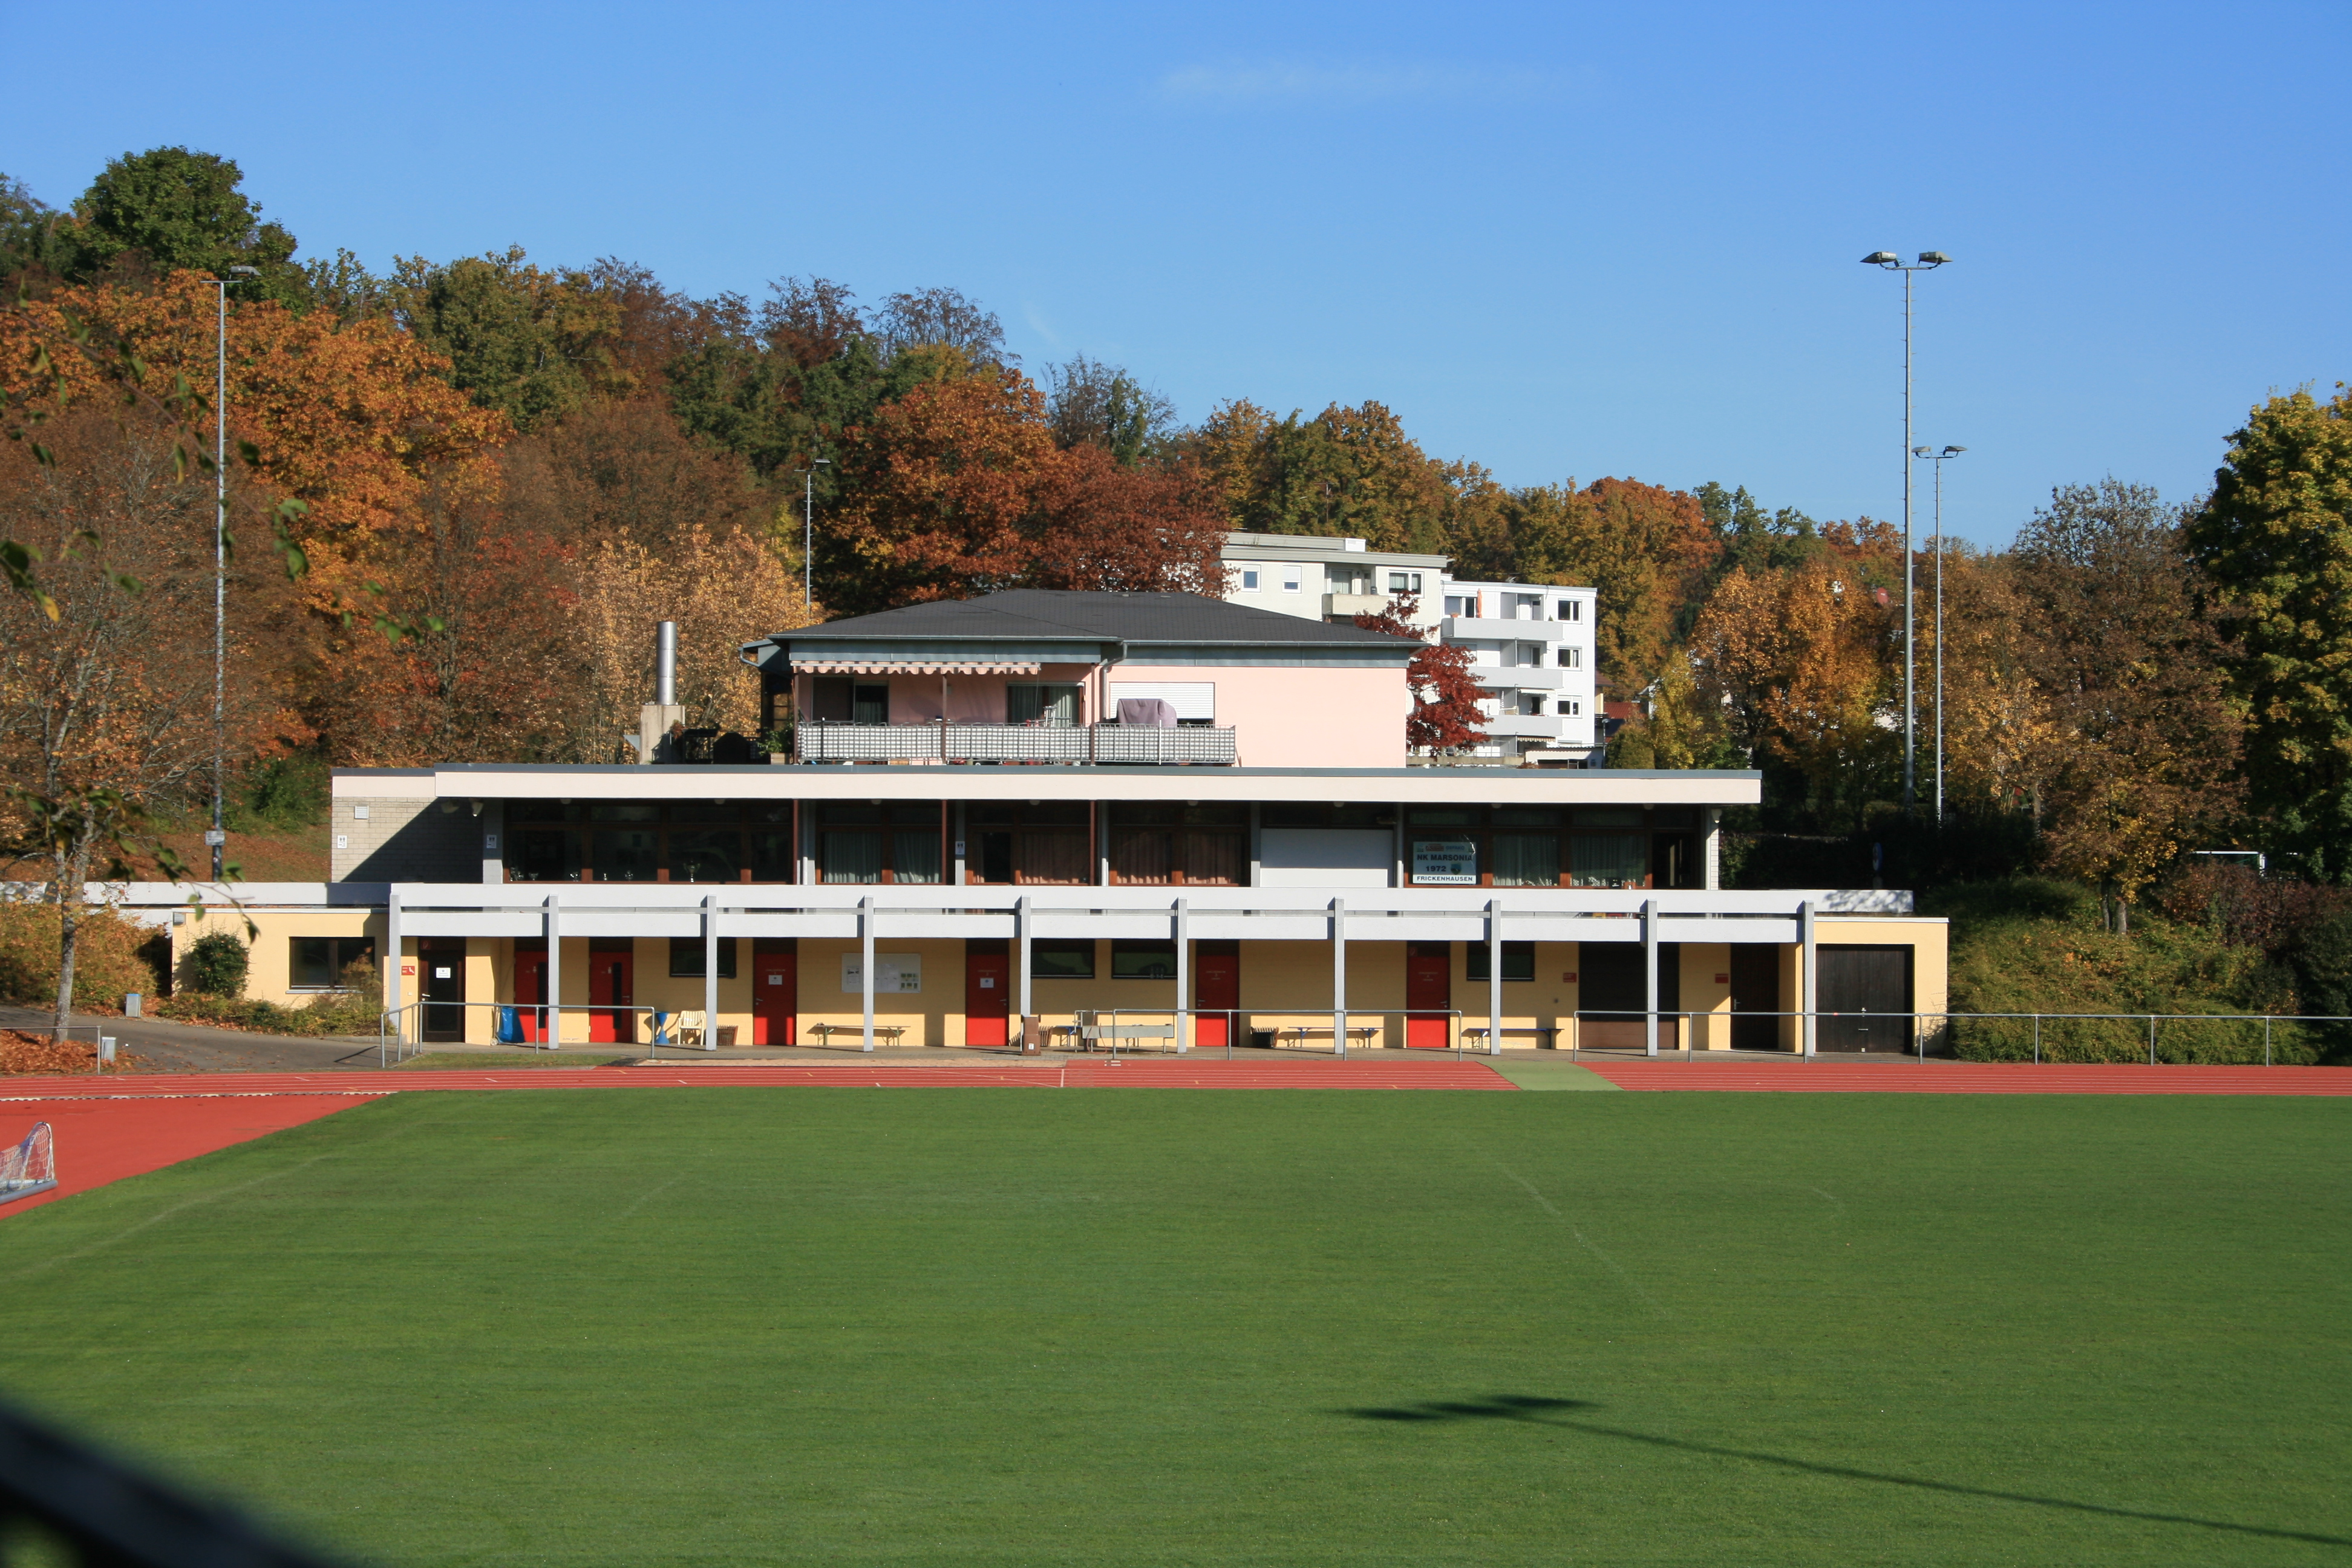  Stadion Frickenhausen 